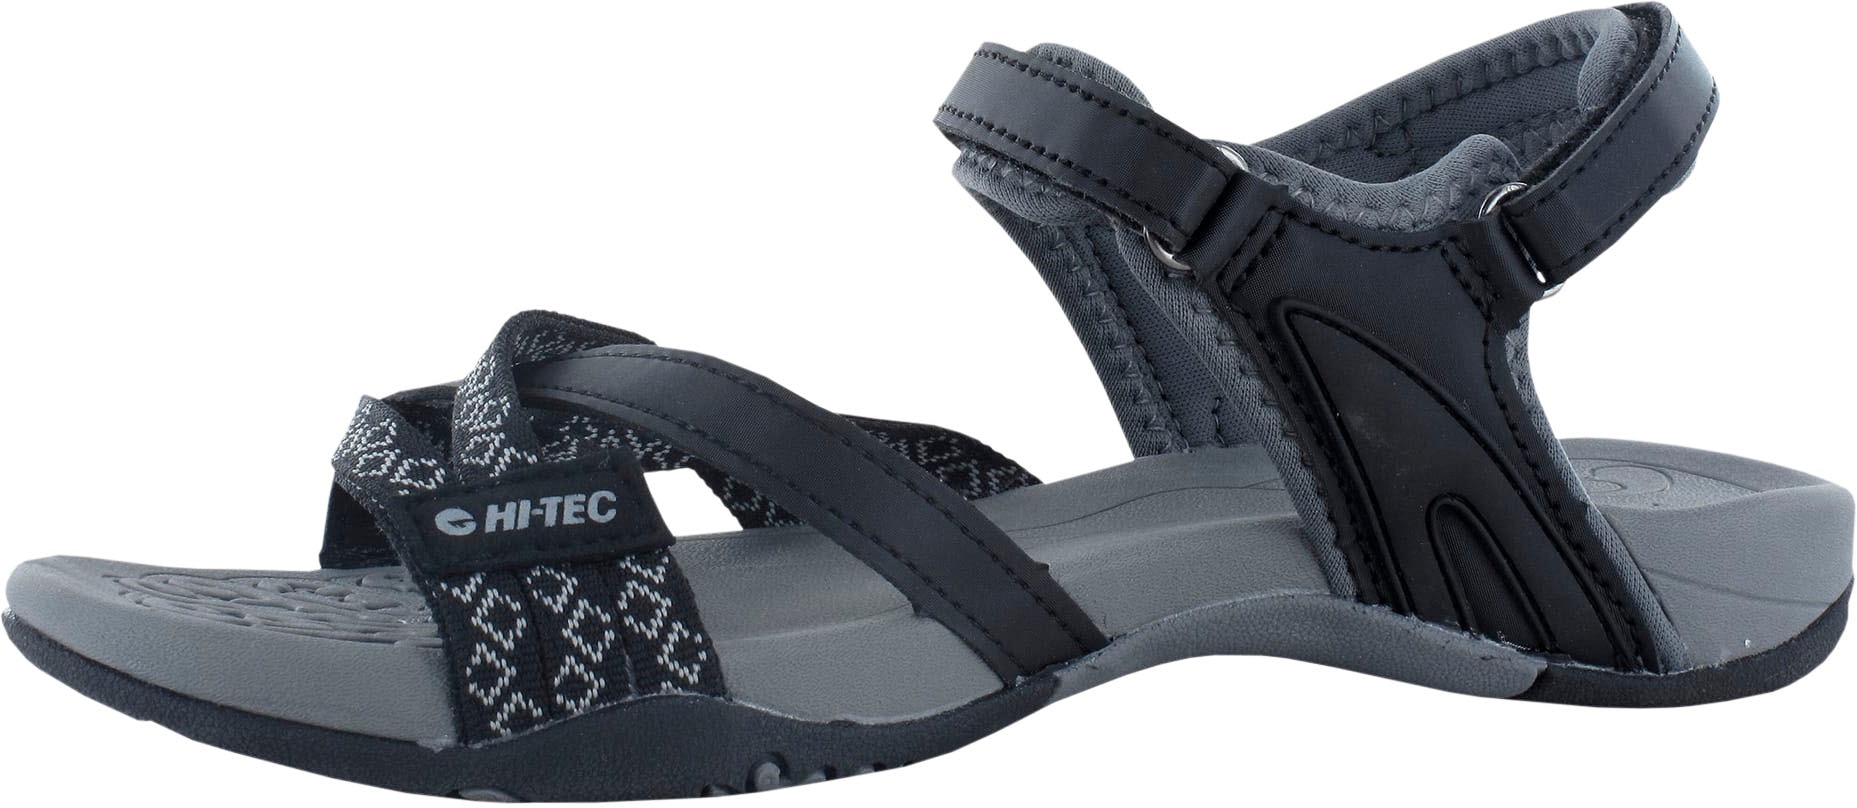 Trendige Hi-Tec Sandale mit JRG«, Klettverschluss »SAVANNA Mindestbestellwert ohne kaufen II versandkostenfrei 